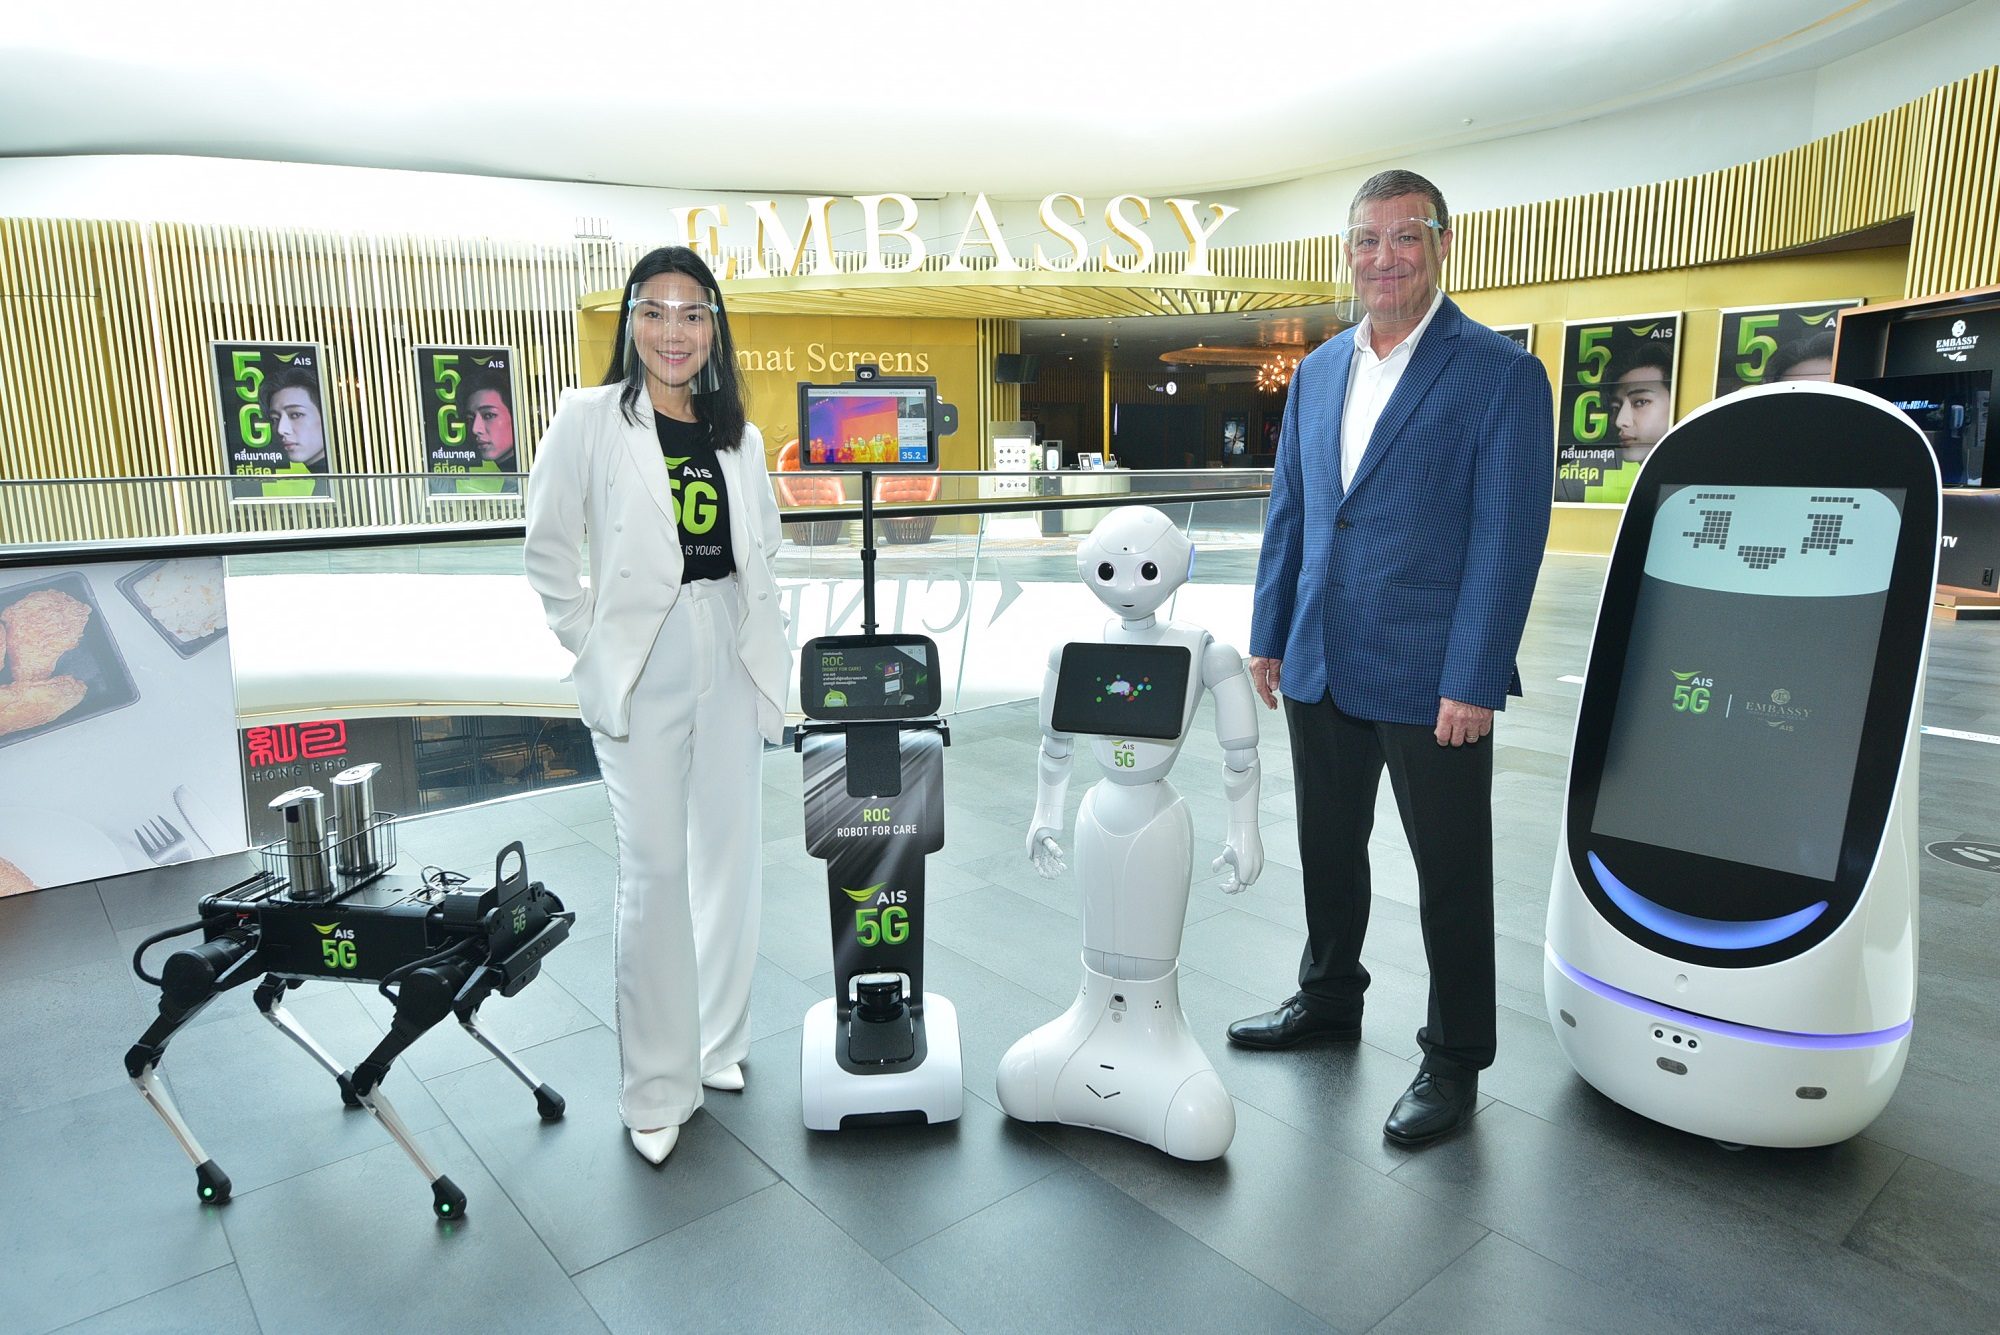 AIS ร่วมกับเอ็มบาสซี ดิโพลแมท สกรีน ยกระดับการบริการด้วยหุ่นยนต์ 5G พร้อมชมภาพยนตร์ด้วยความ ‘อุ่นใจ’ ”